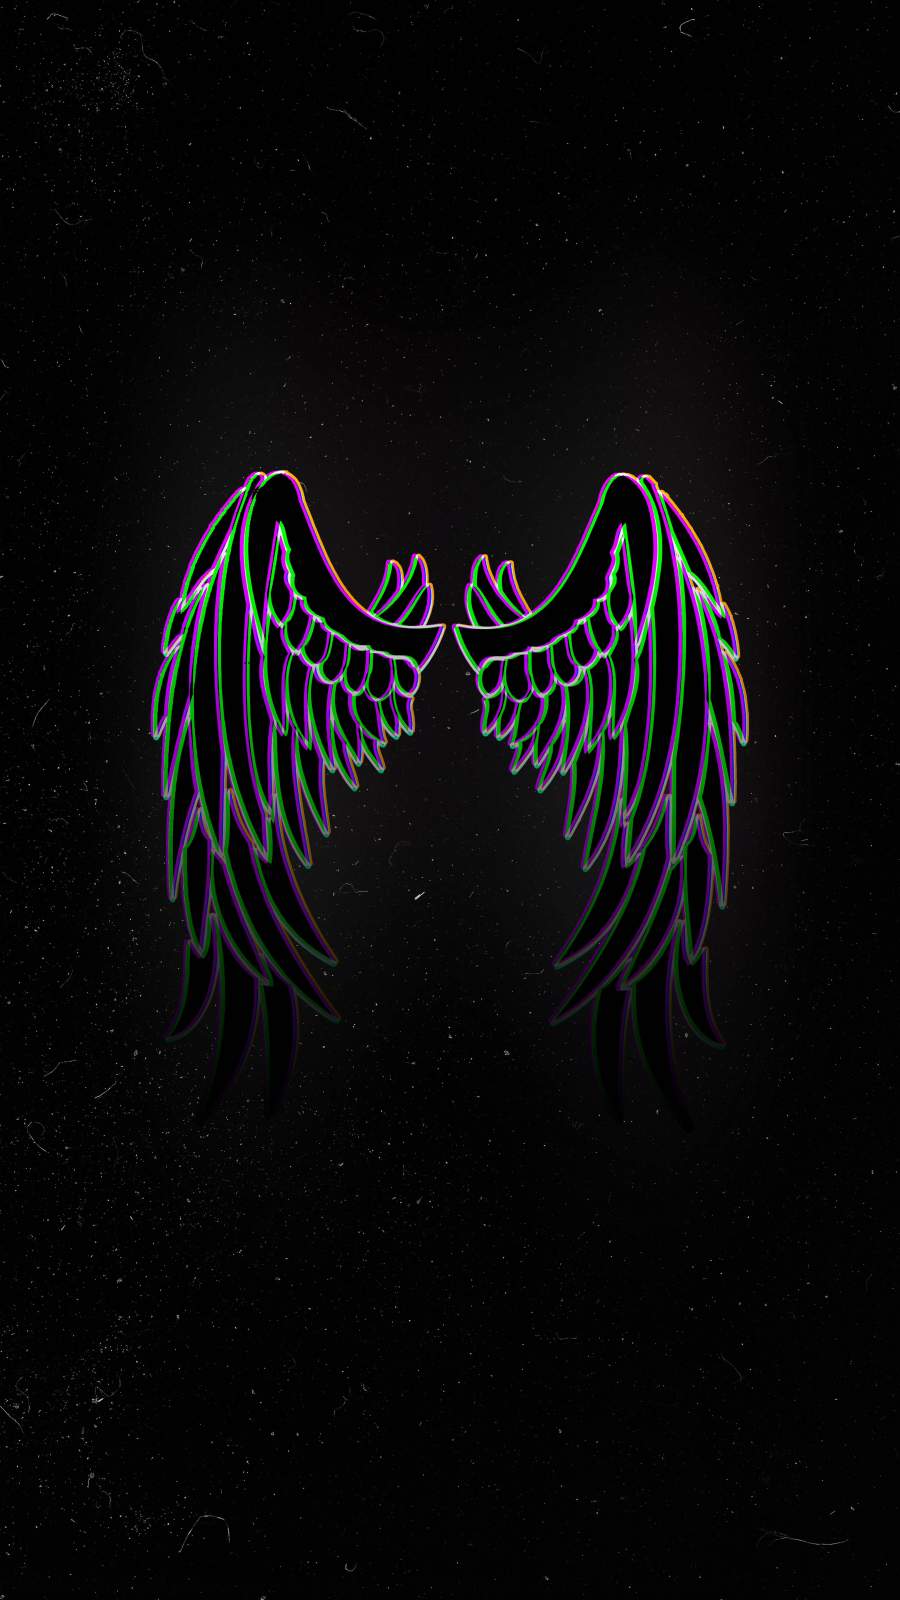 21+] Angel Wing iPhone Wallpapers - WallpaperSafari